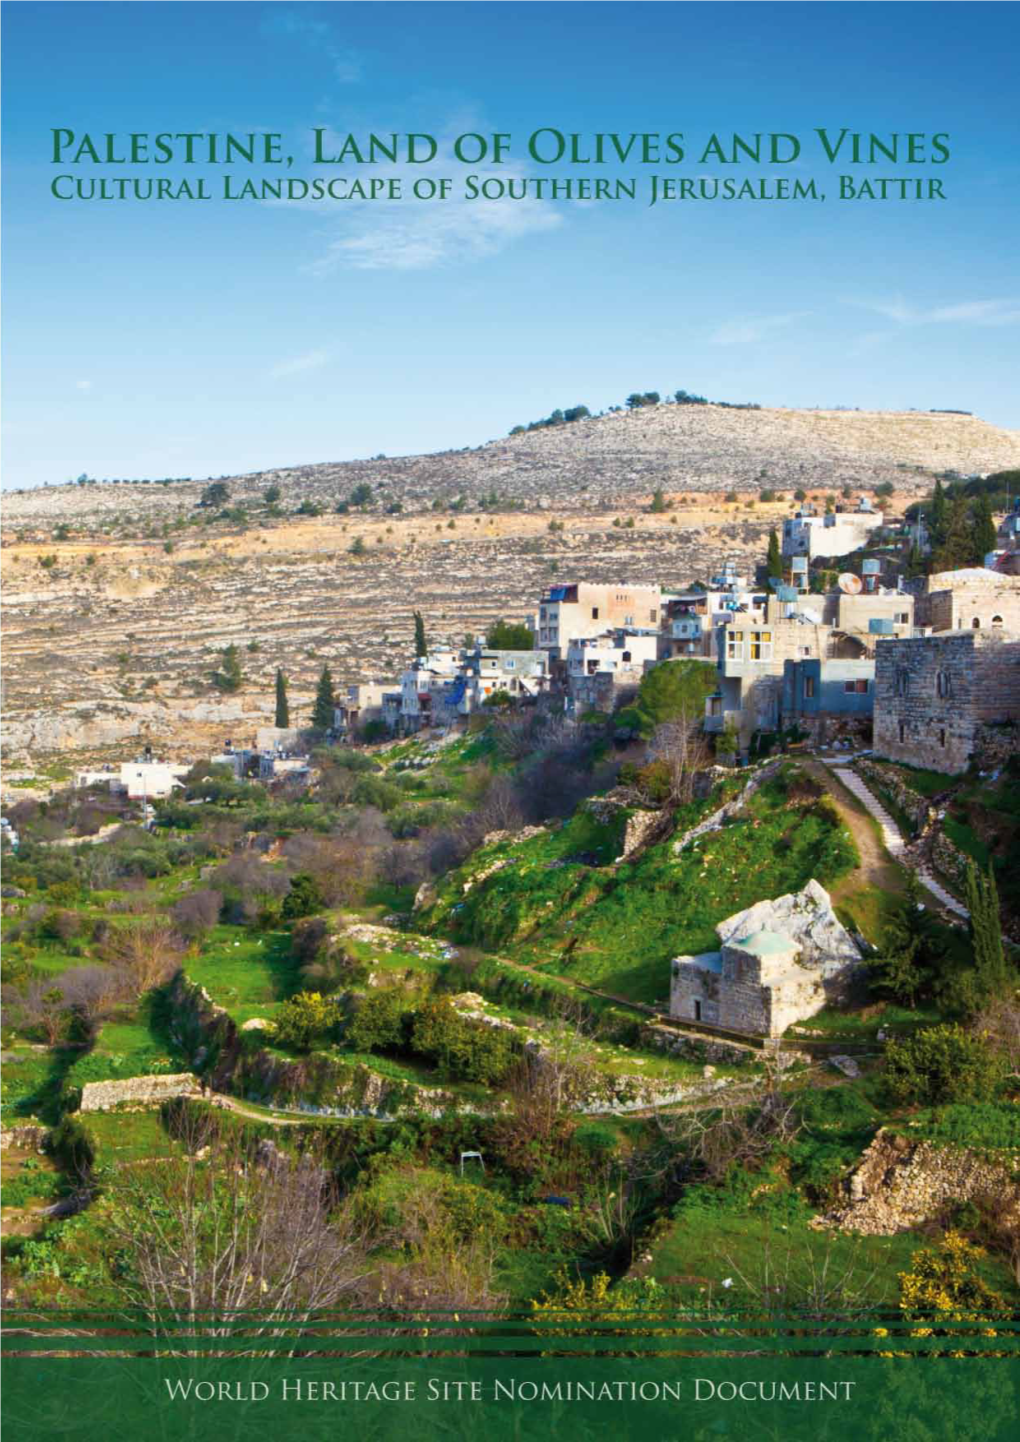 1 Palestine, Land of Olives and Vines Cultural Landscape of Southern Jerusalem, Battir Annexe 1